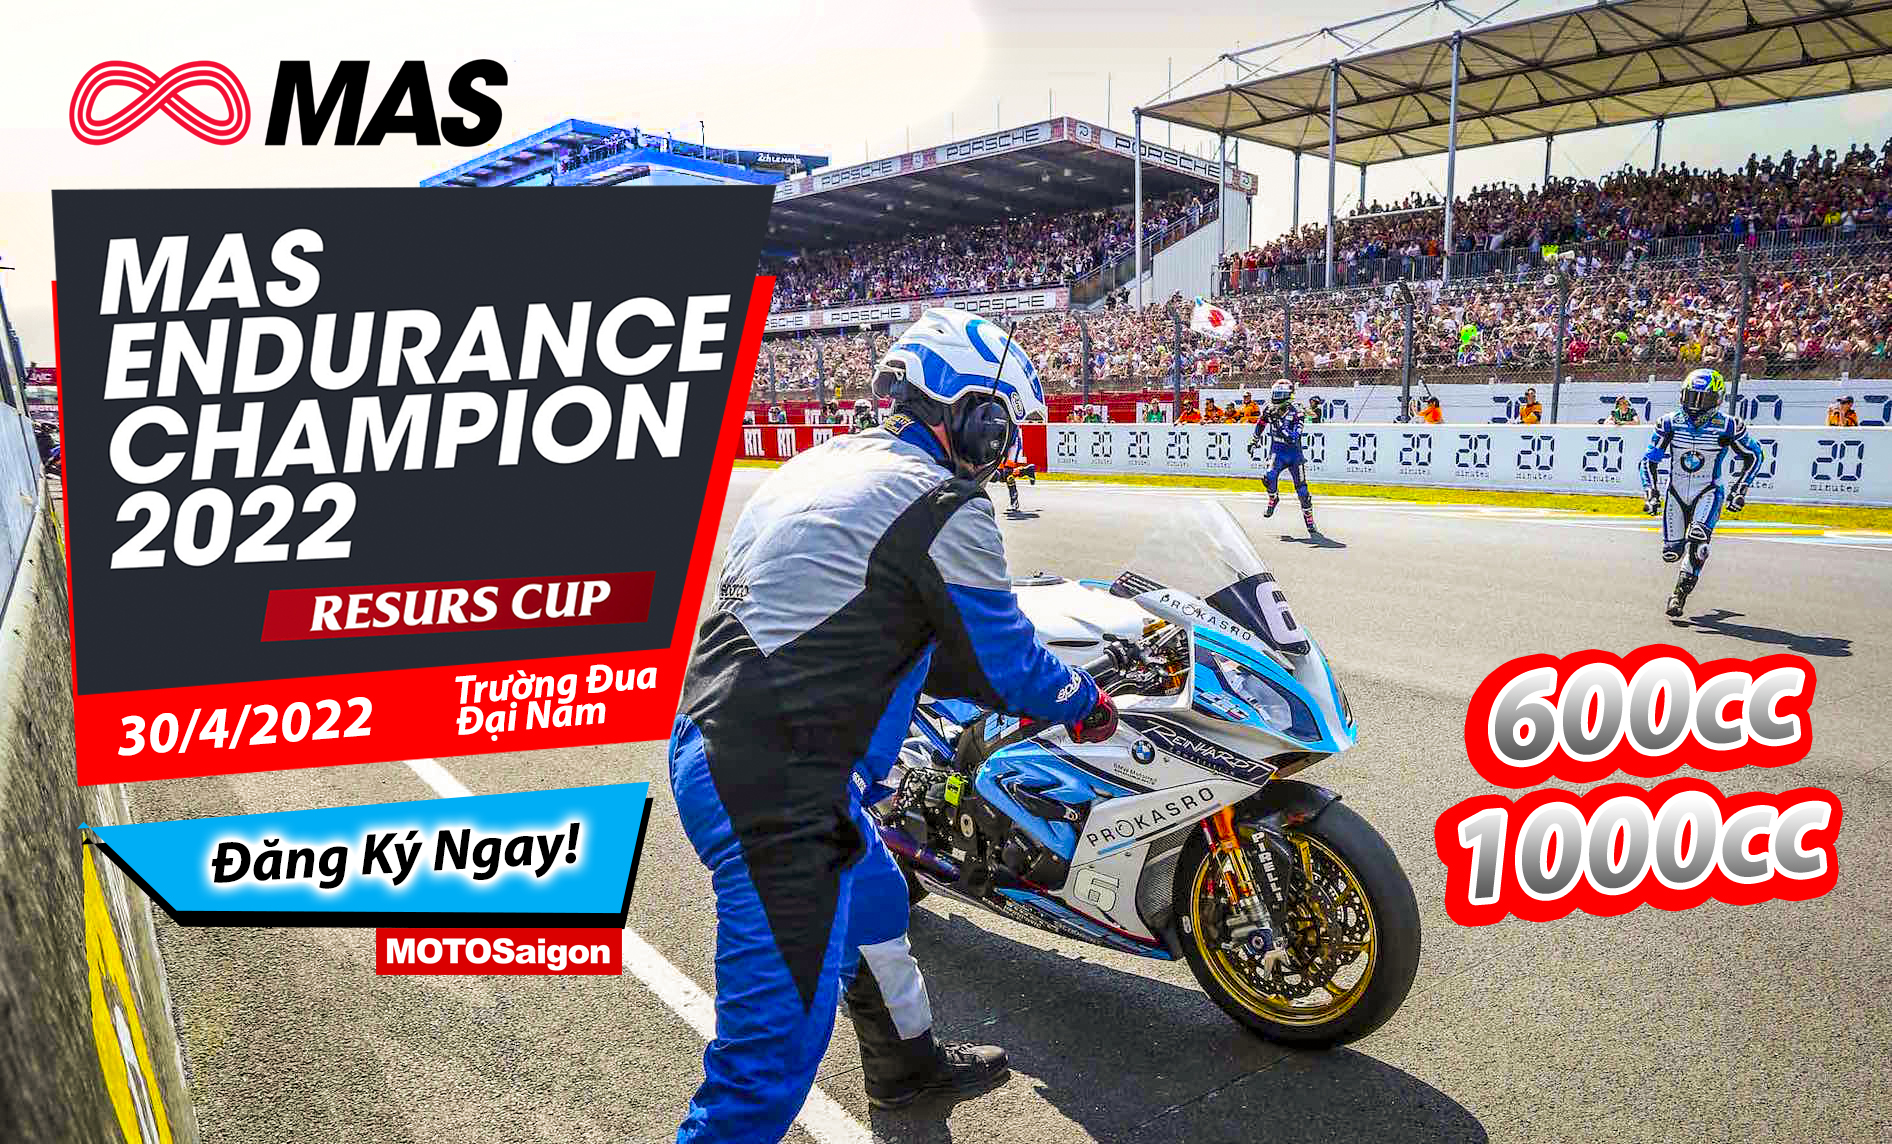 RESURS CUP - MAS Endurance Champion 2022 - Đăng ký tham gia giải đua xe tiếp sức moto pkl